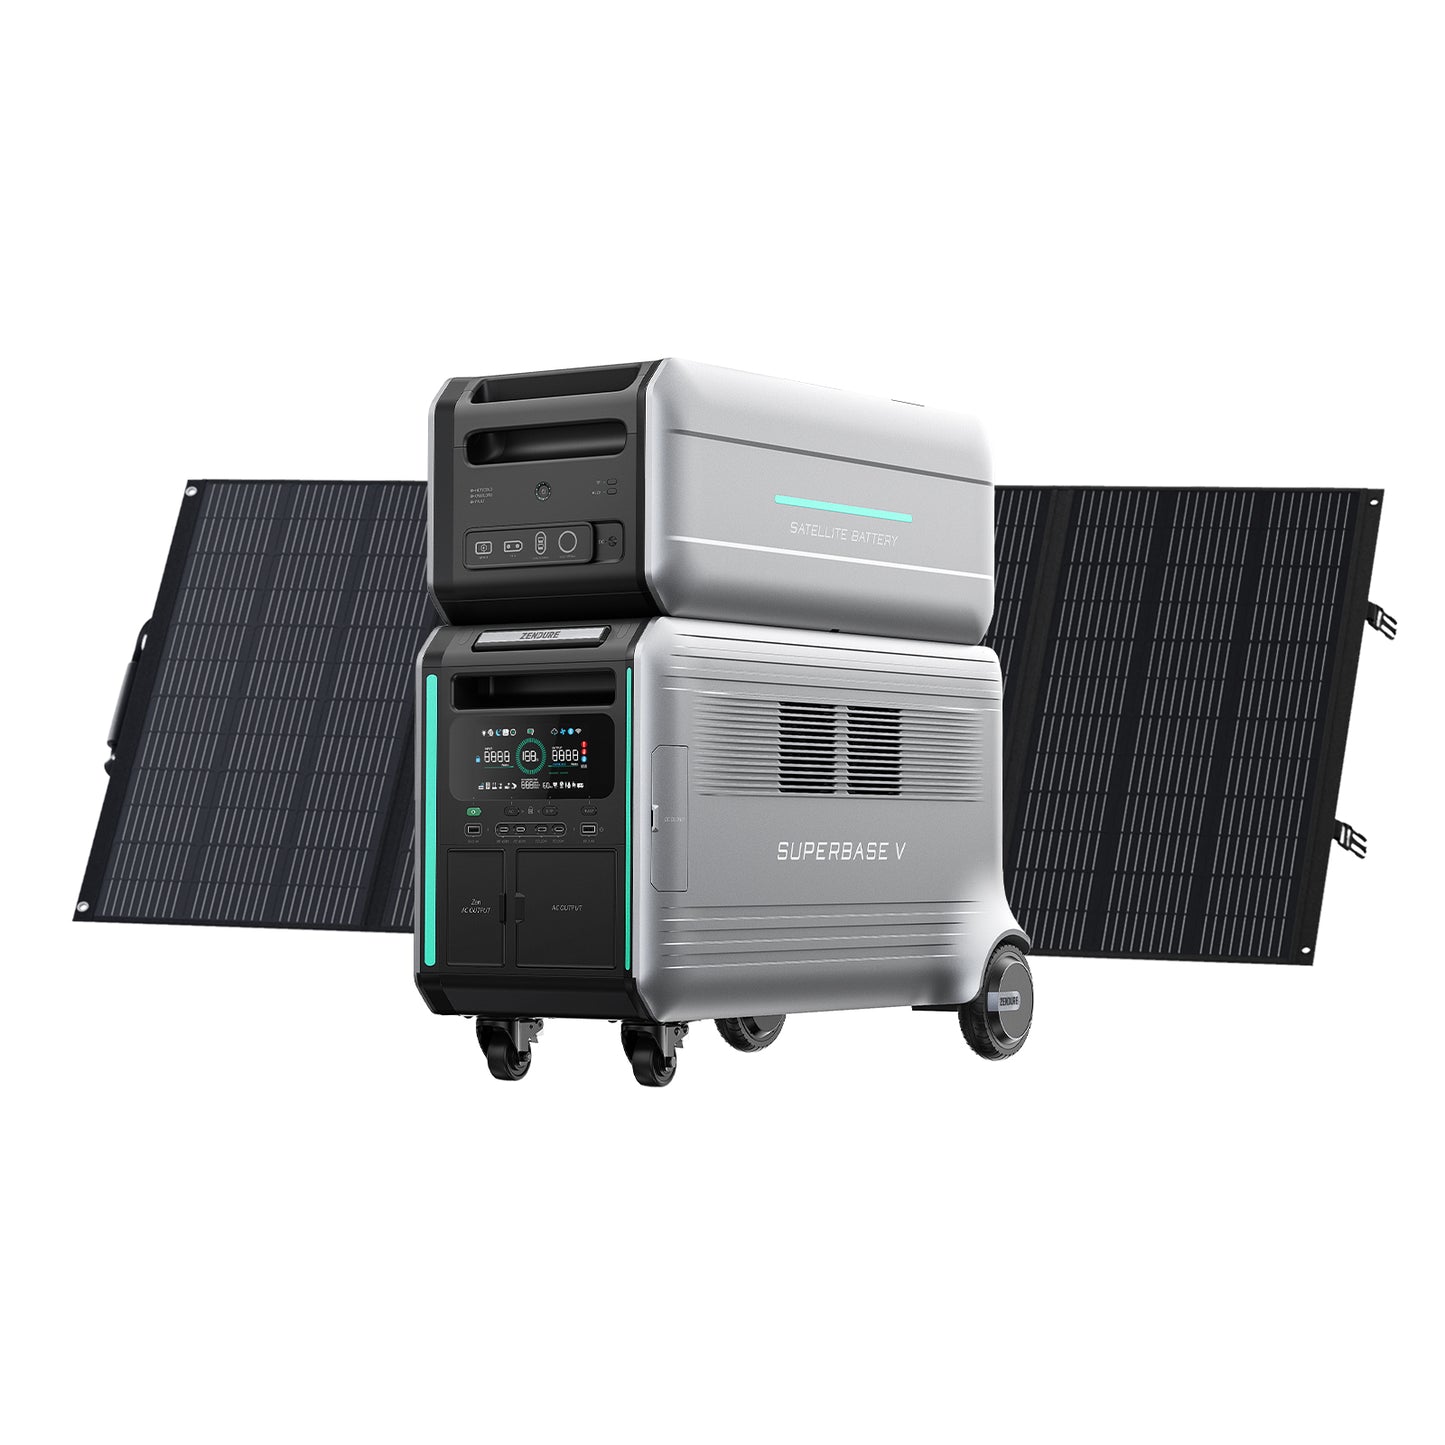 ZENDURE SuperBase V4600 + B4600 + 400W Solar Panel